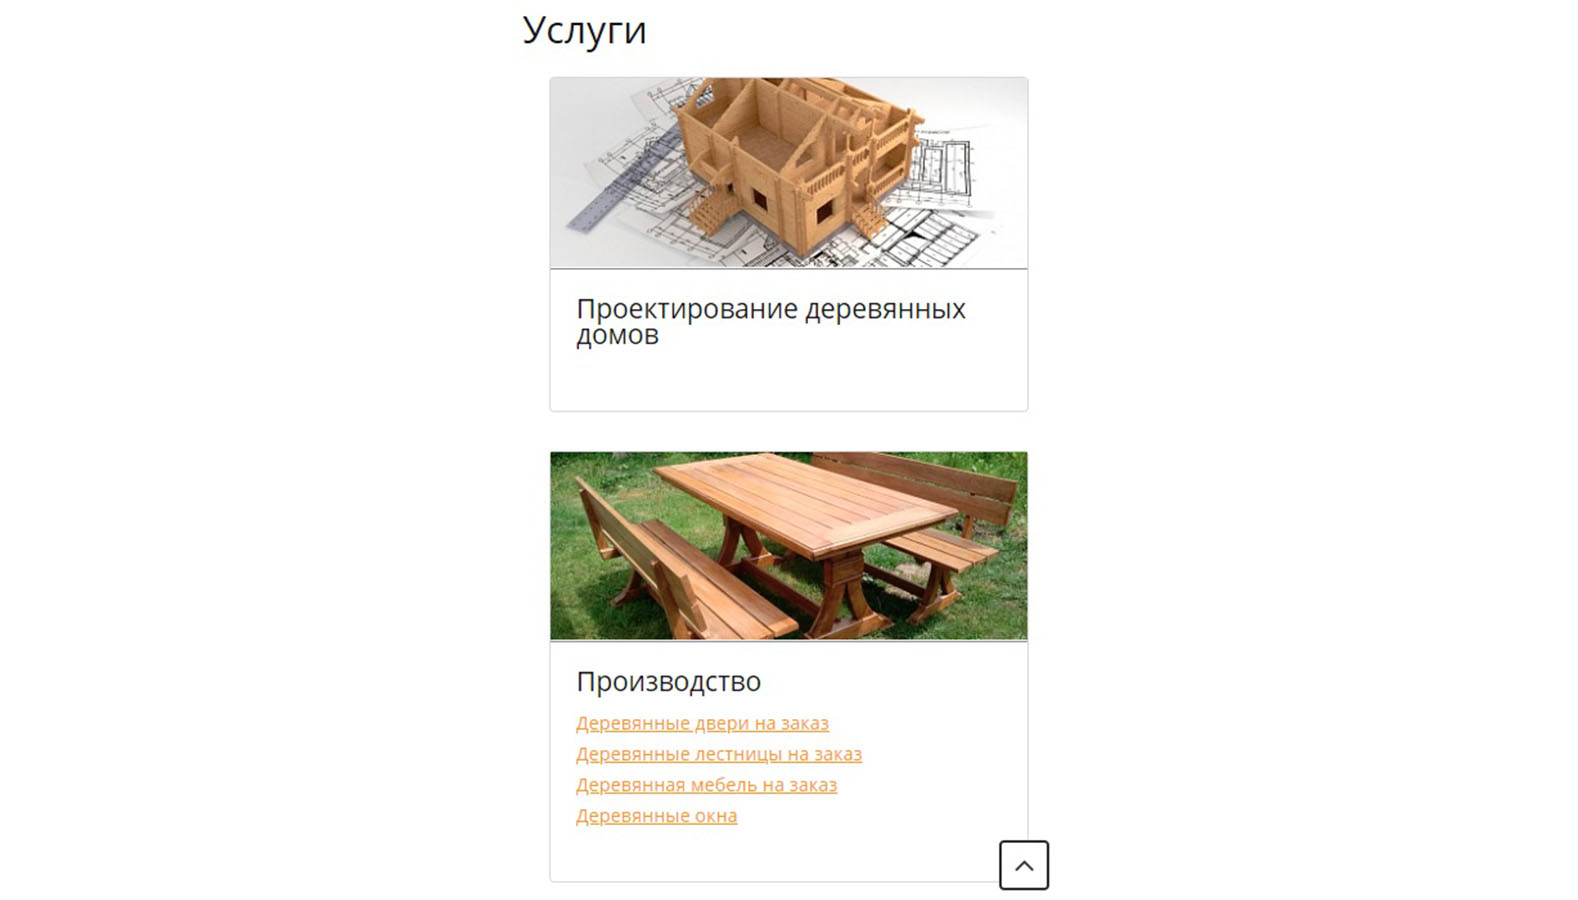 Русский Теремъ - строительная компания